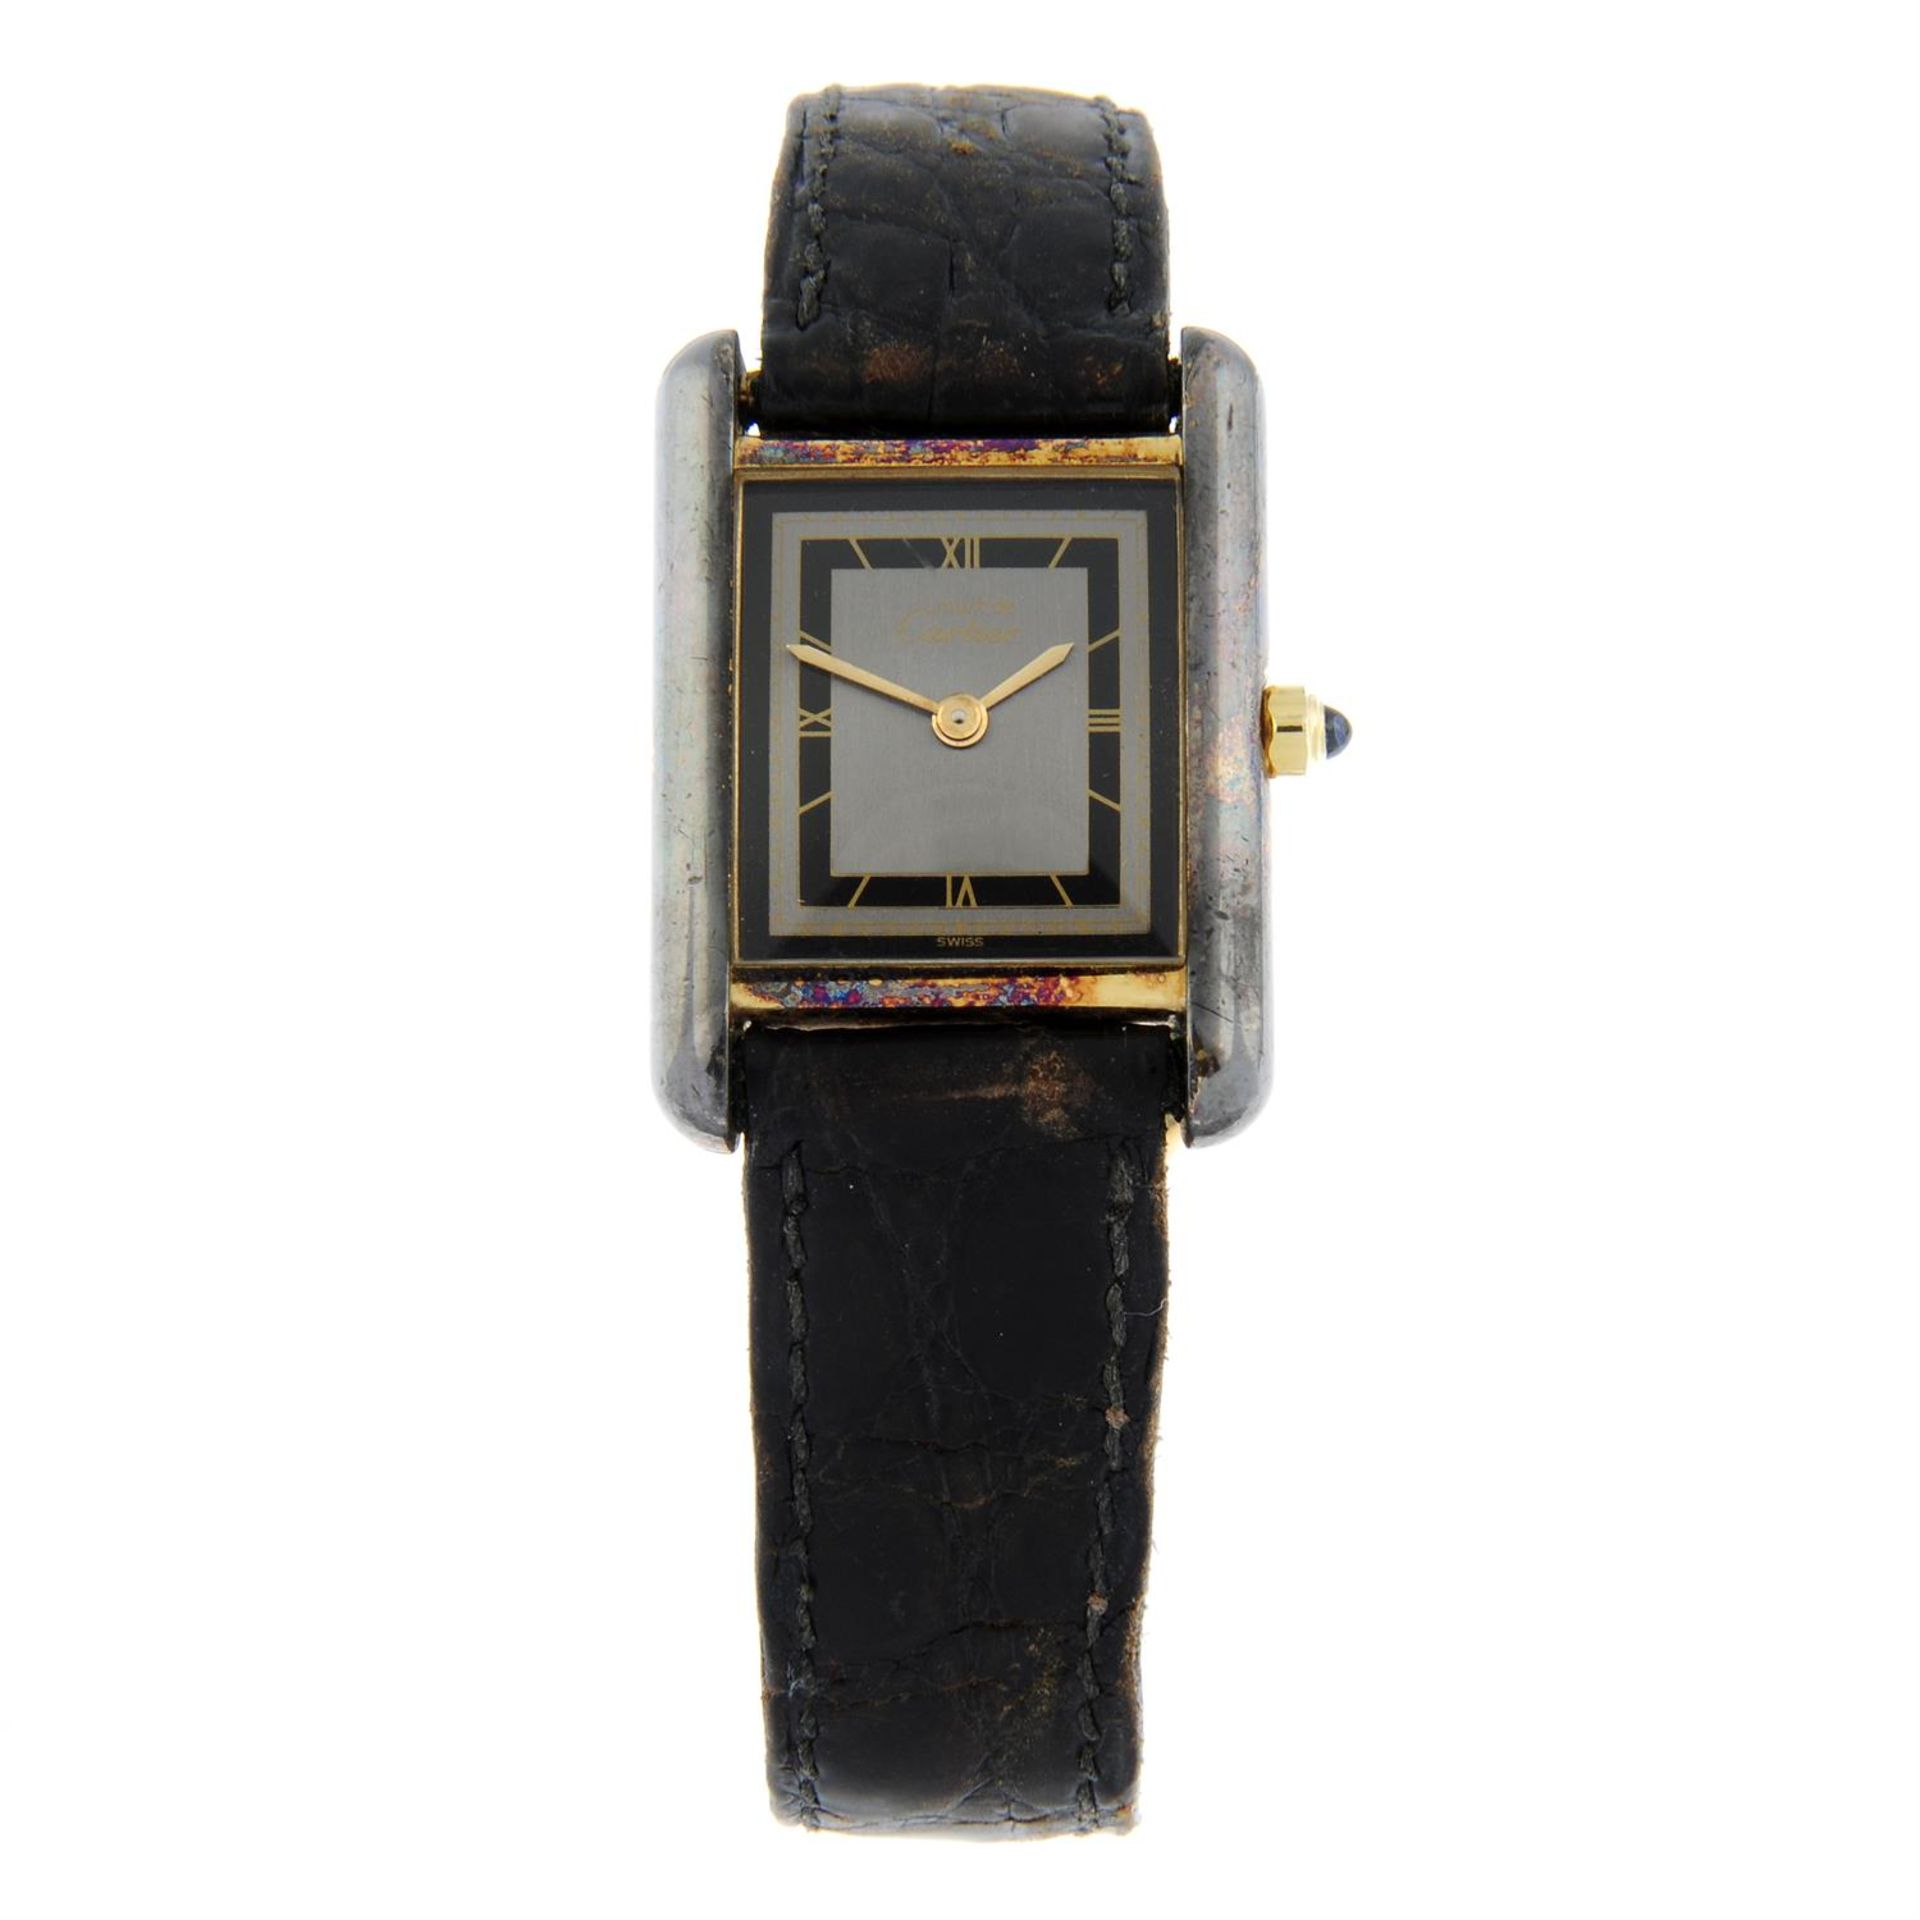 CARTIER - a gold plated silver Must De Cartier wrist watch, 20mm.